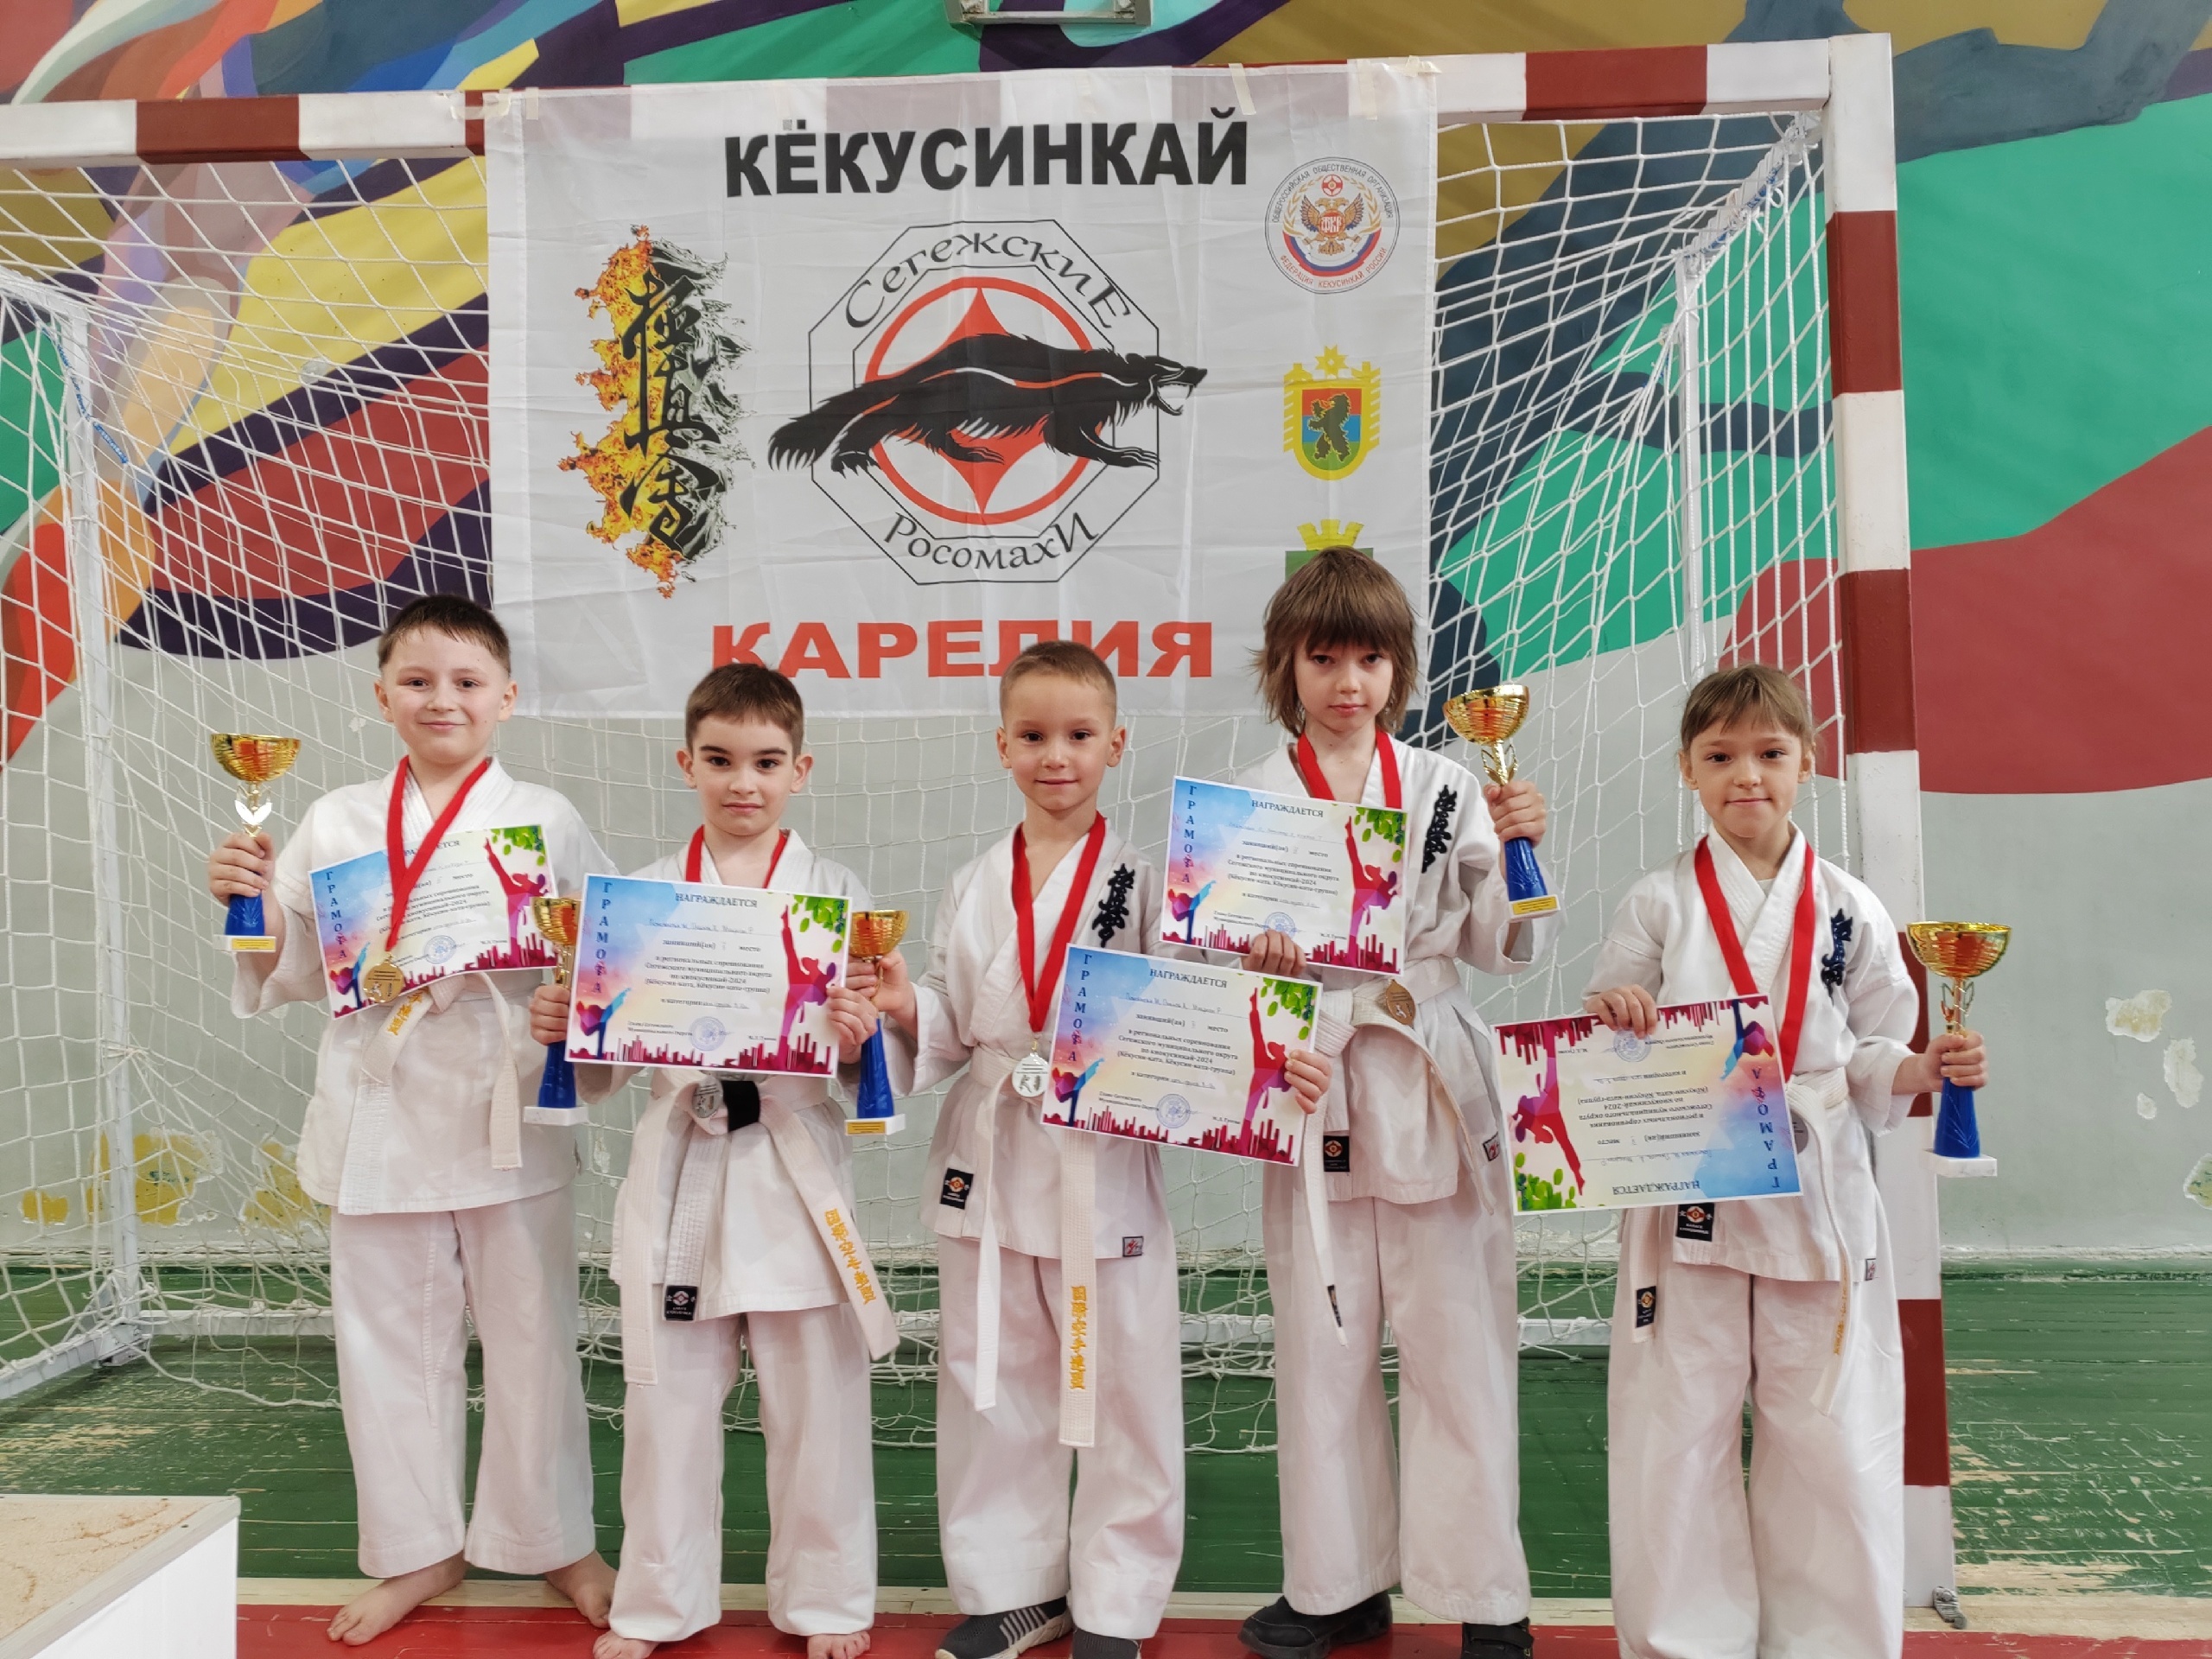 Сегежские каратисты заняли первое место на региональных соревнованиях